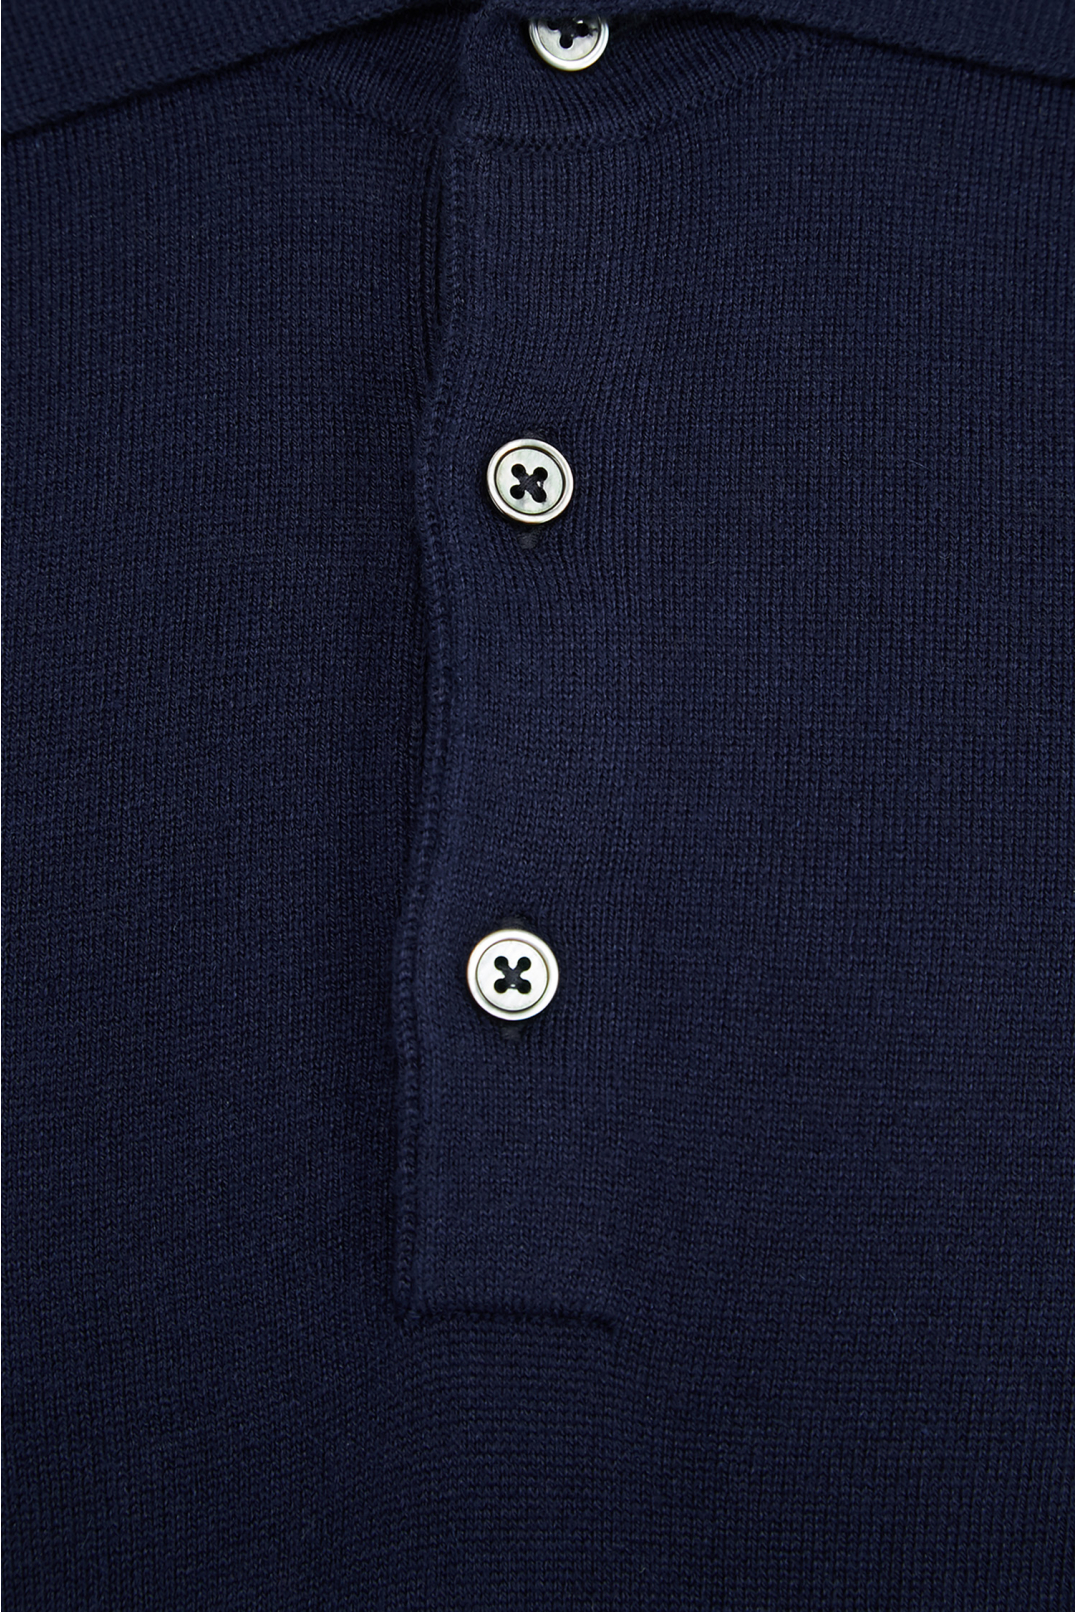 Мужской темно-синий шелковый джемпер с коротким рукавом - 3